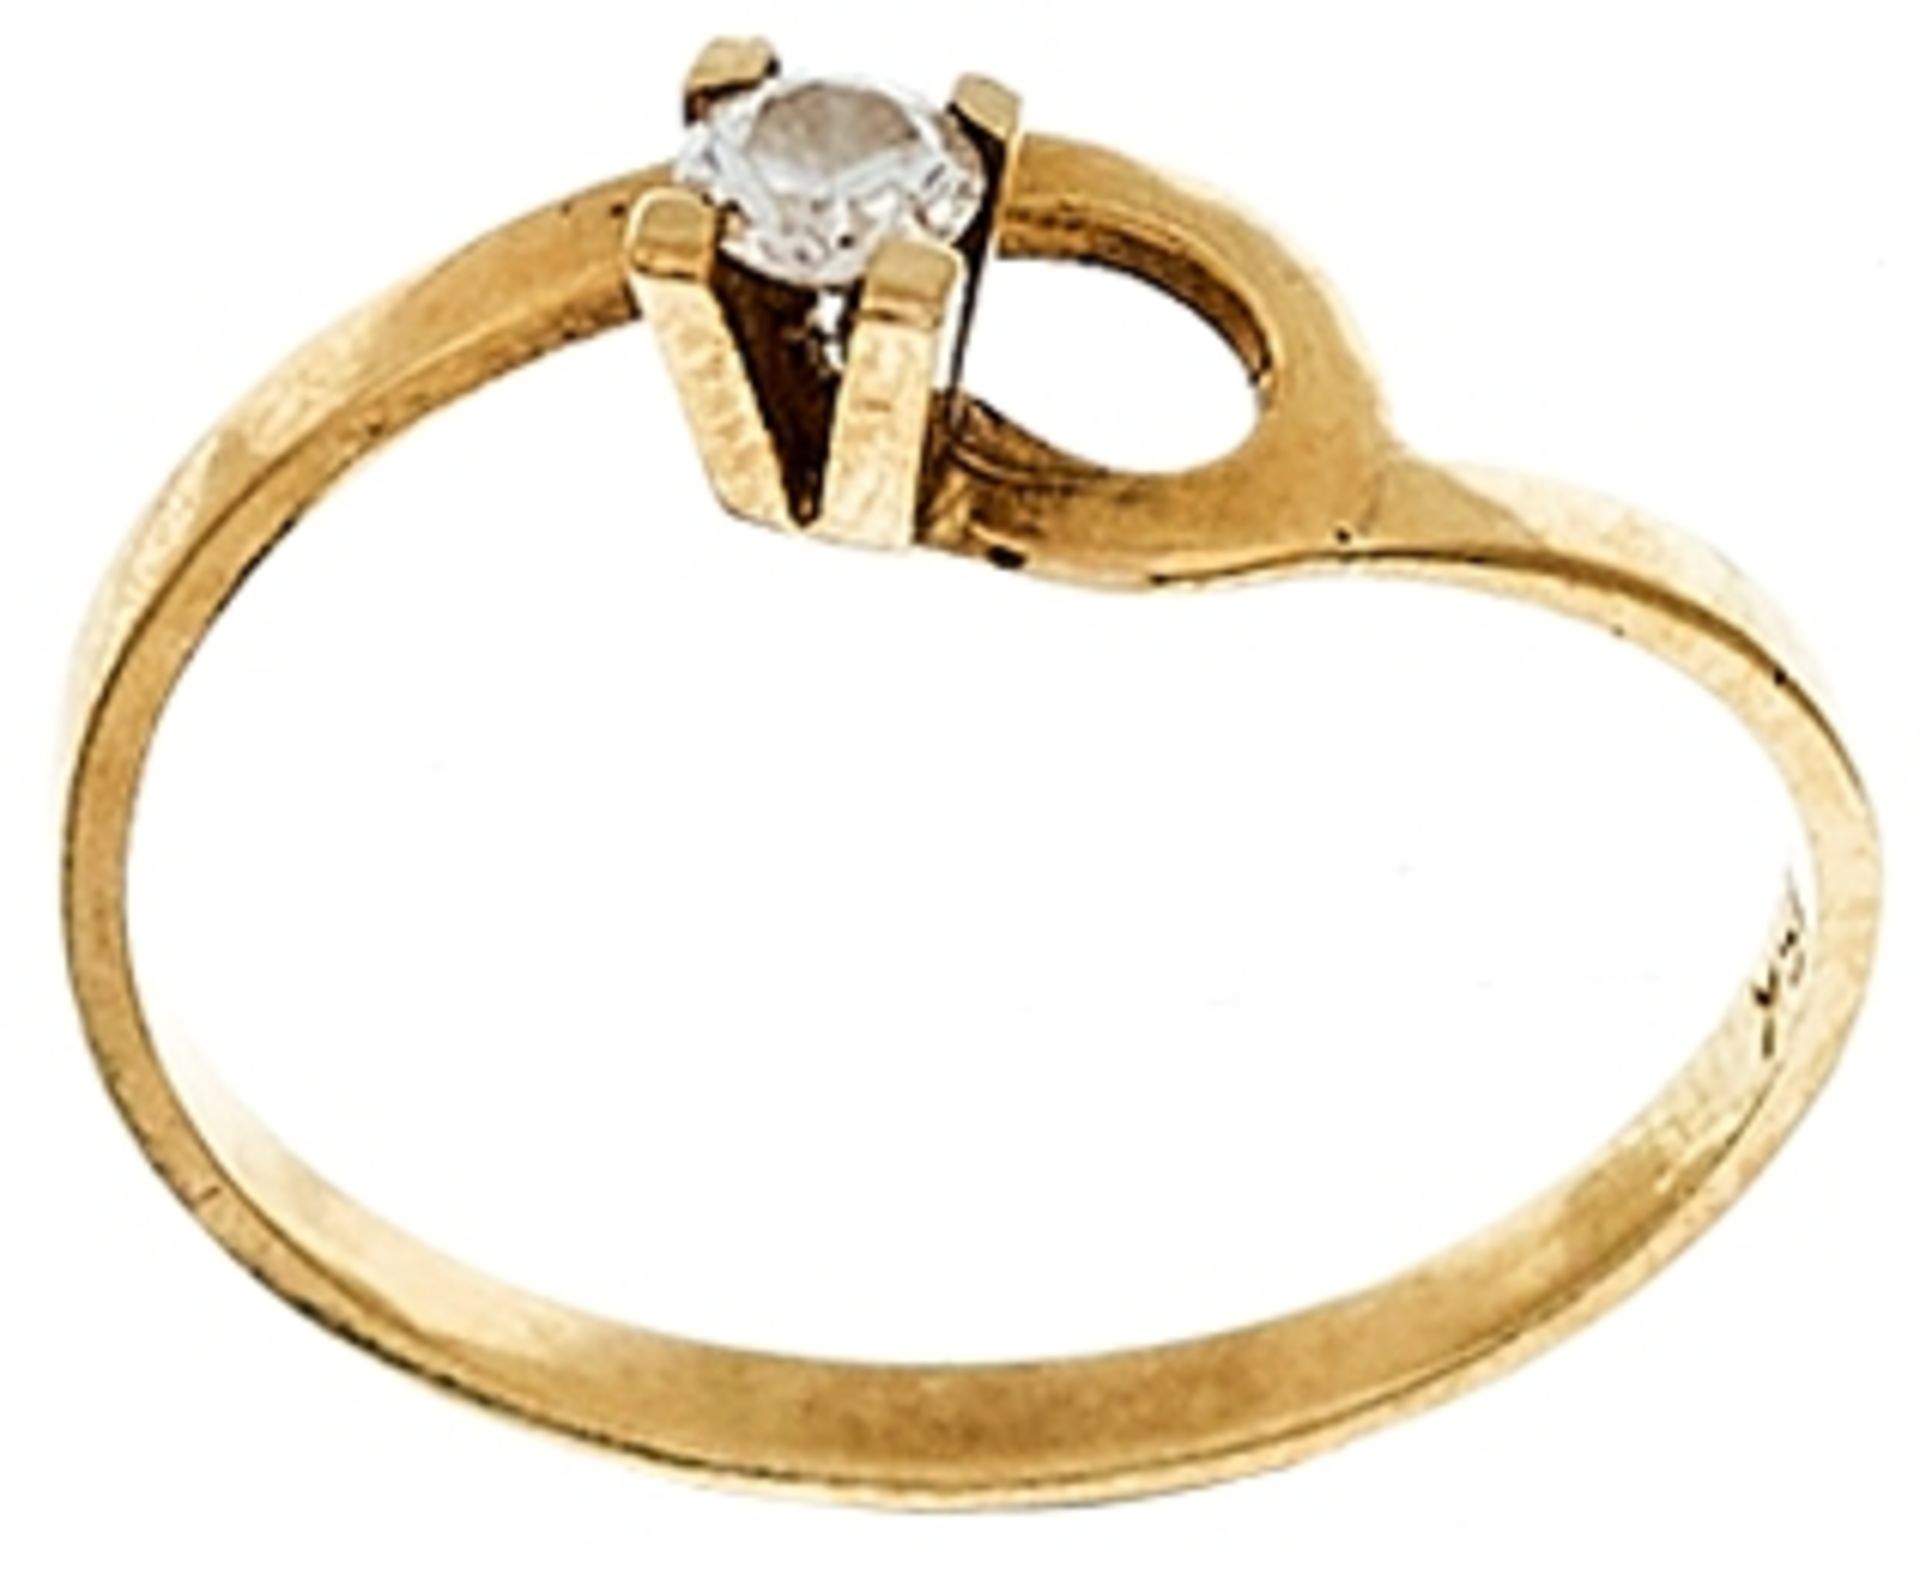 Ringe Ungewöhnlicher Damenfingerring mit Brillantbesatz, getestet, mit einem Durchmesser von ca. 3,0